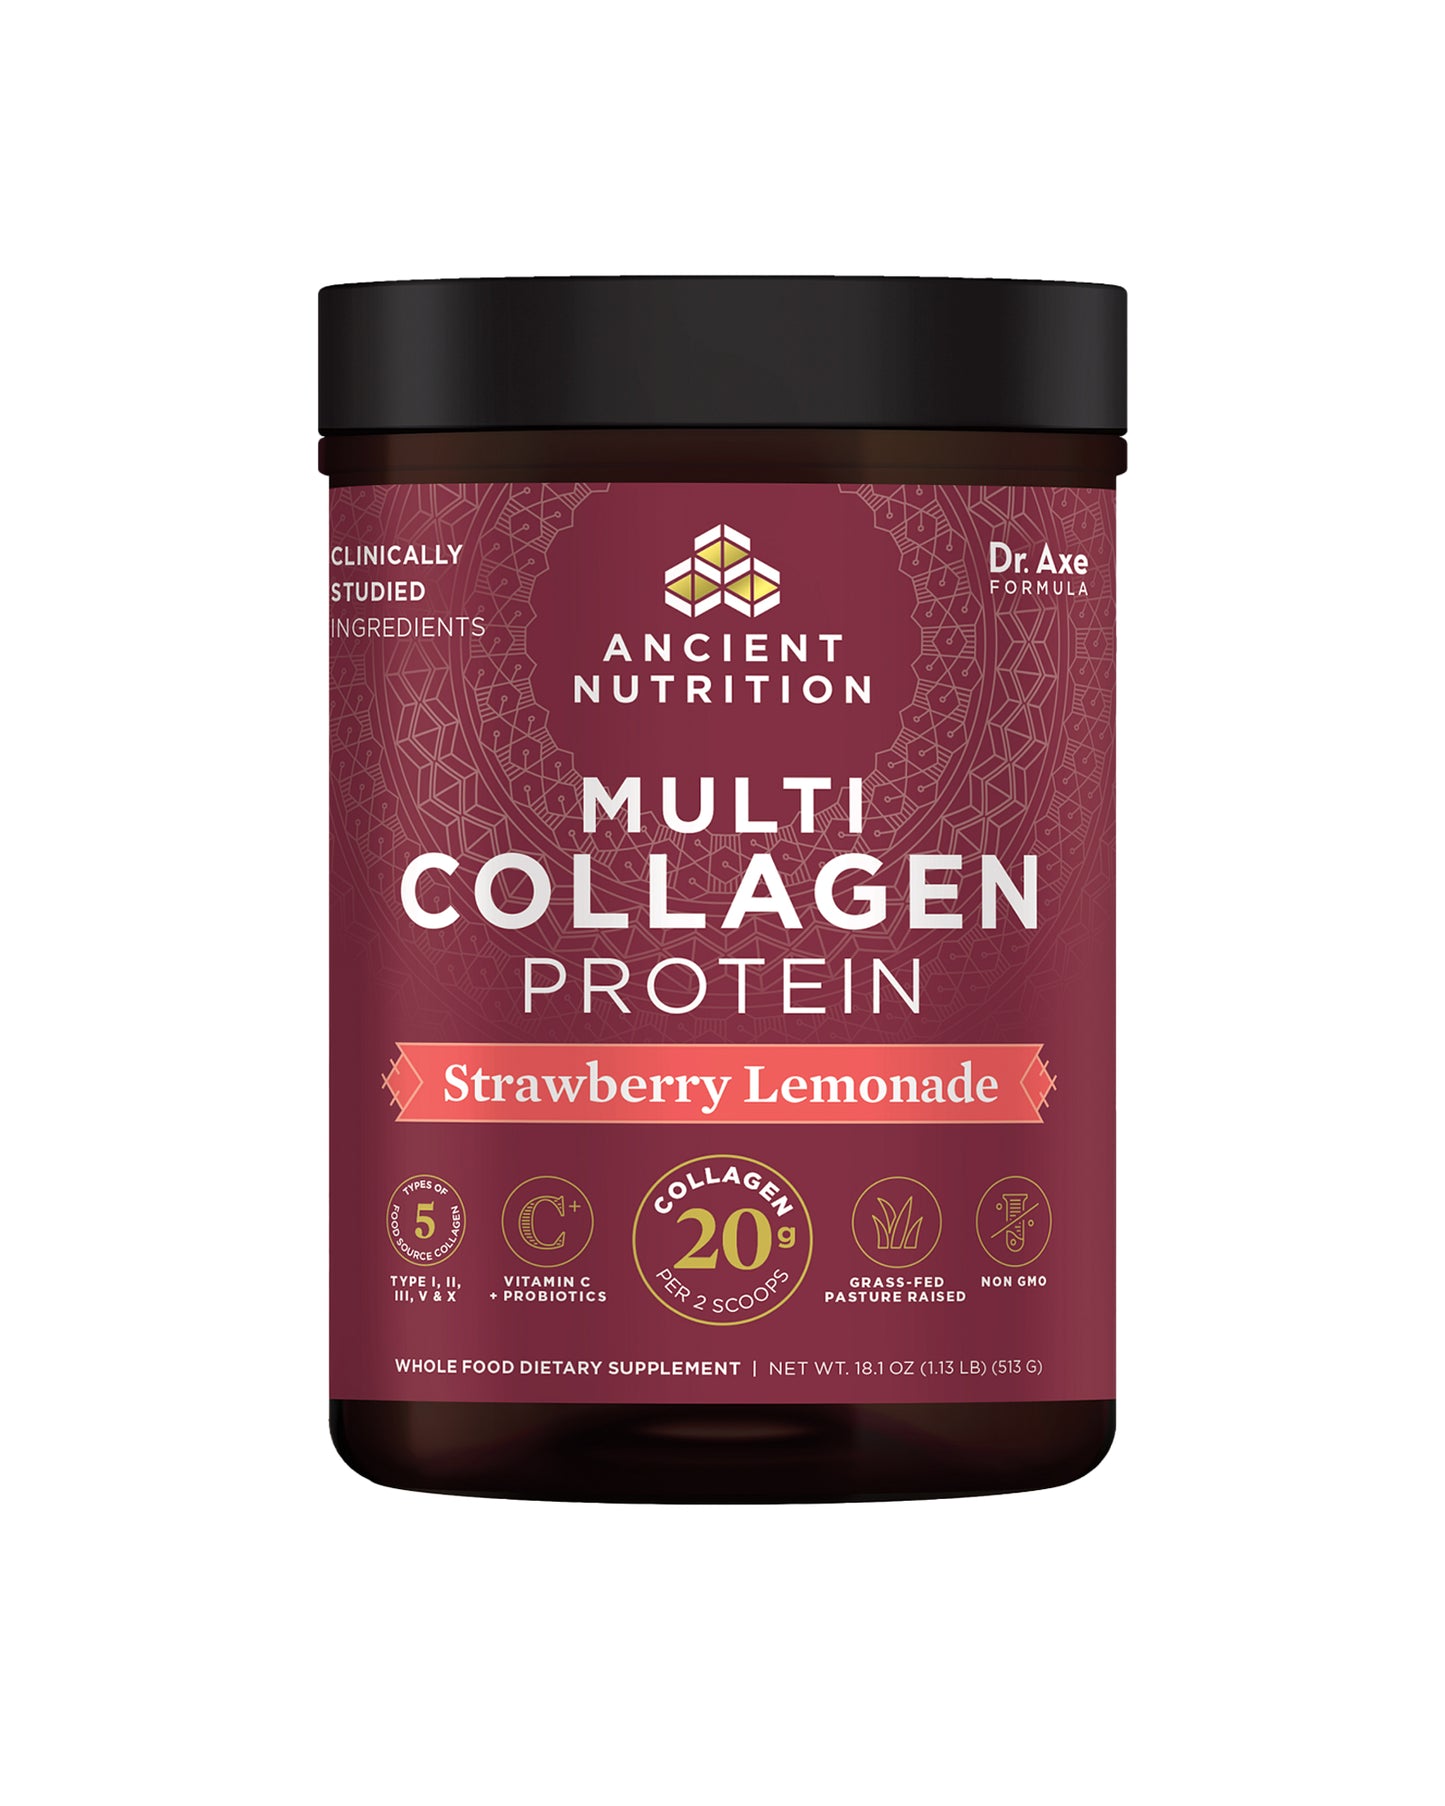 Strawberry Lemonade Multi Collagen Protein Powder